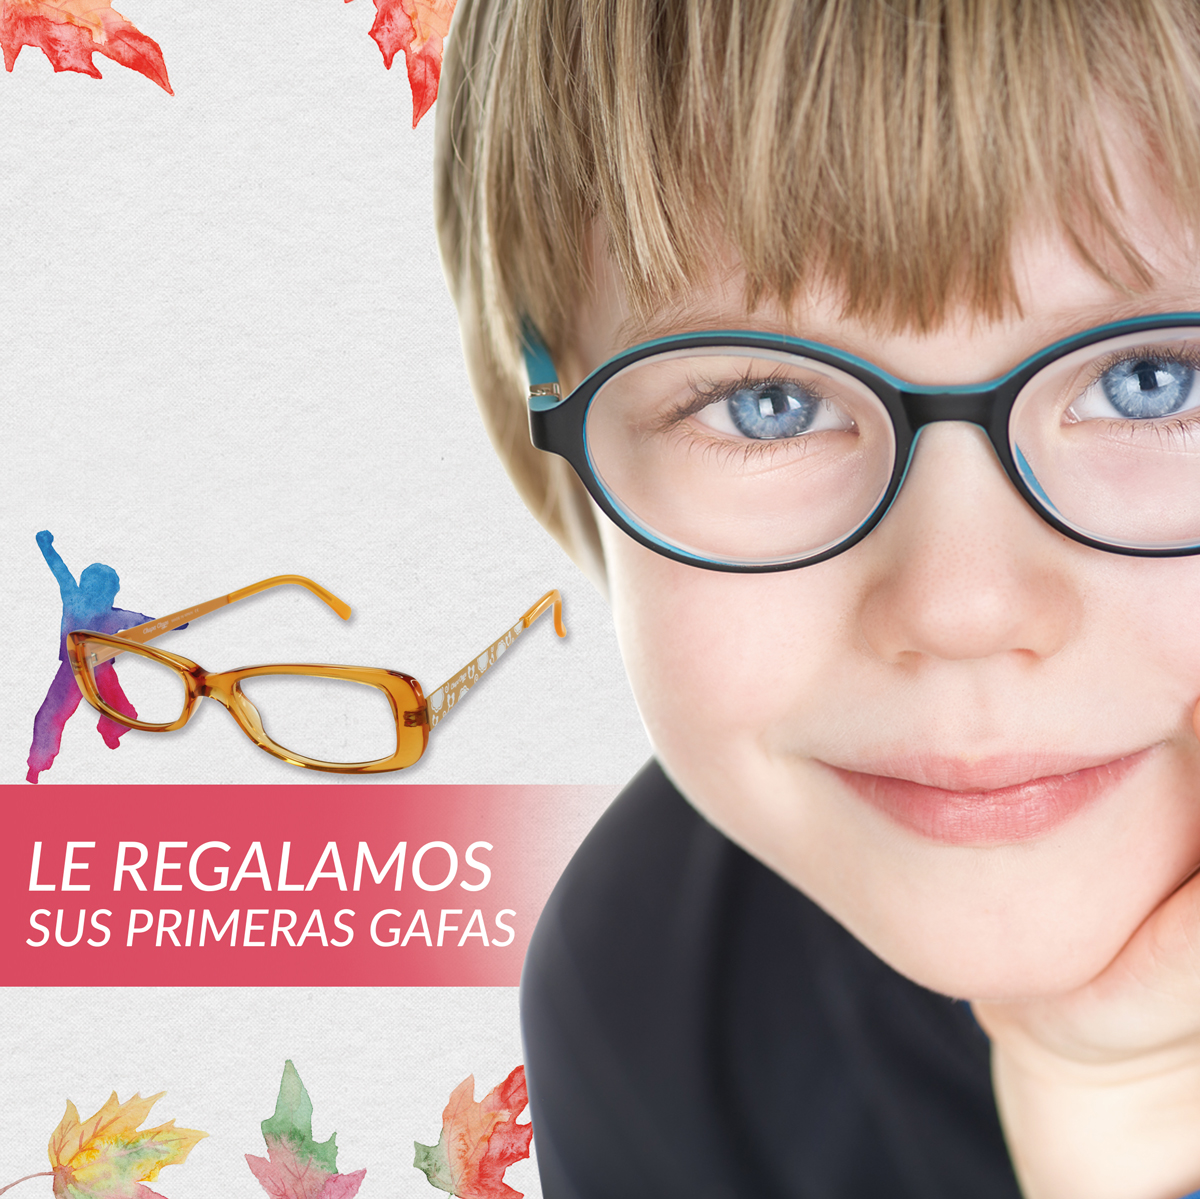 Hábil entidad Canguro 6 síntomas para saber si mi hijo necesita gafas - Blog a primera vista